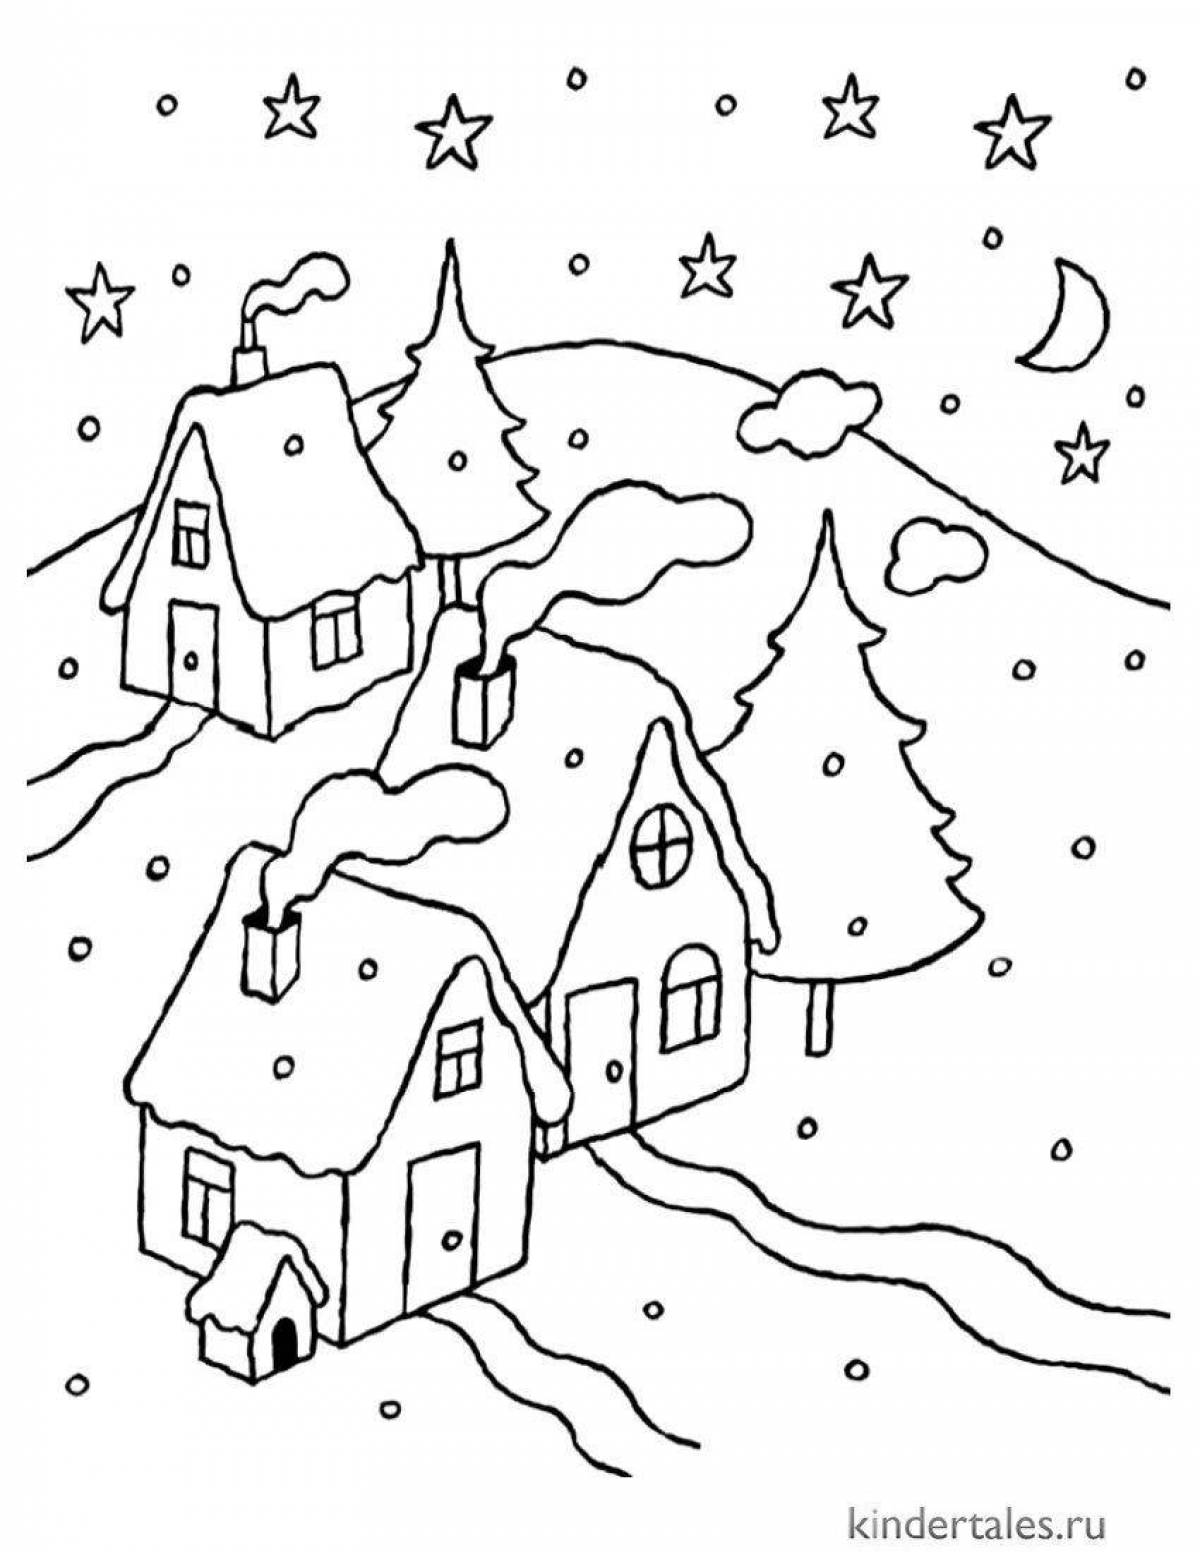 Радостный зимний пейзаж раскраска для детей 7 лет